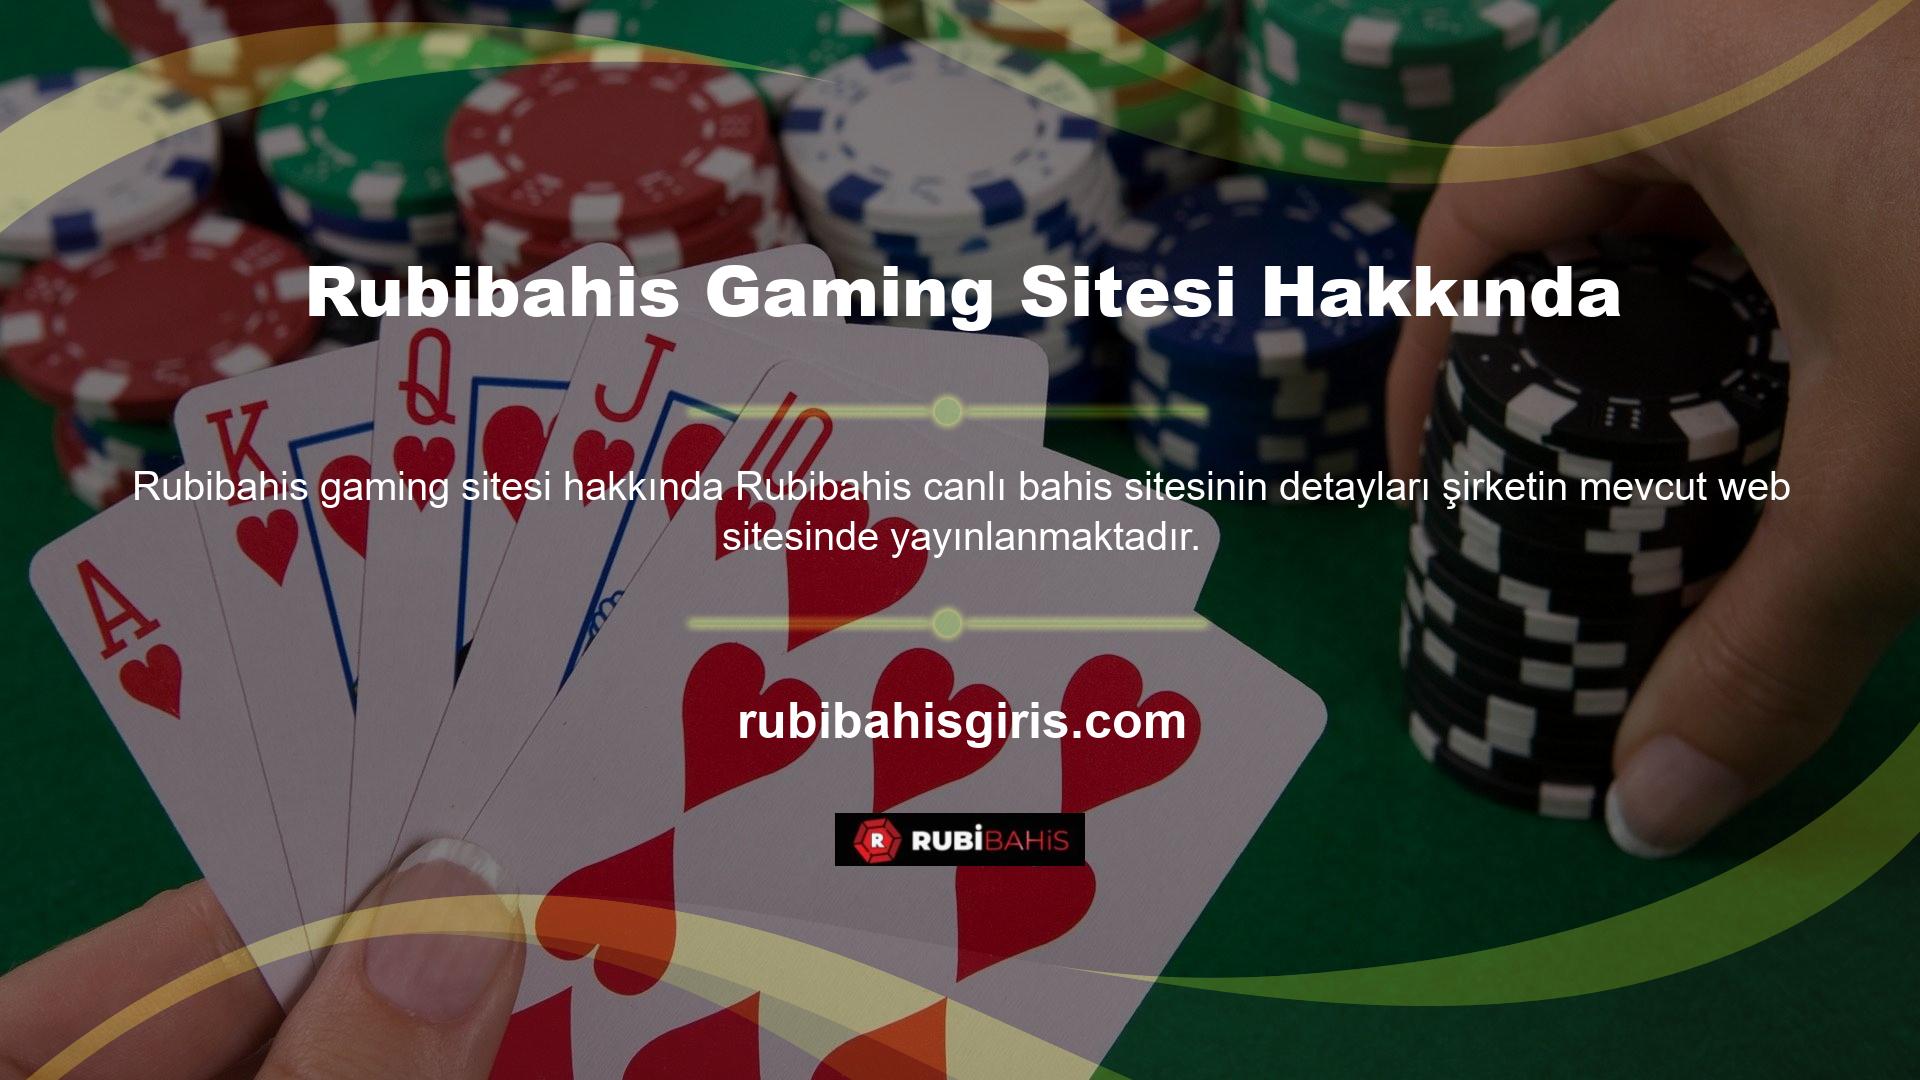 Rubibahis oyun şirketi Rubibahis, tüm dünyada geniş bir müşteri tabanına sahiptir ve fazla çevrimiçi kullanıcıya yüksek kaliteli ve karlı bir oyun ortamı sağlar